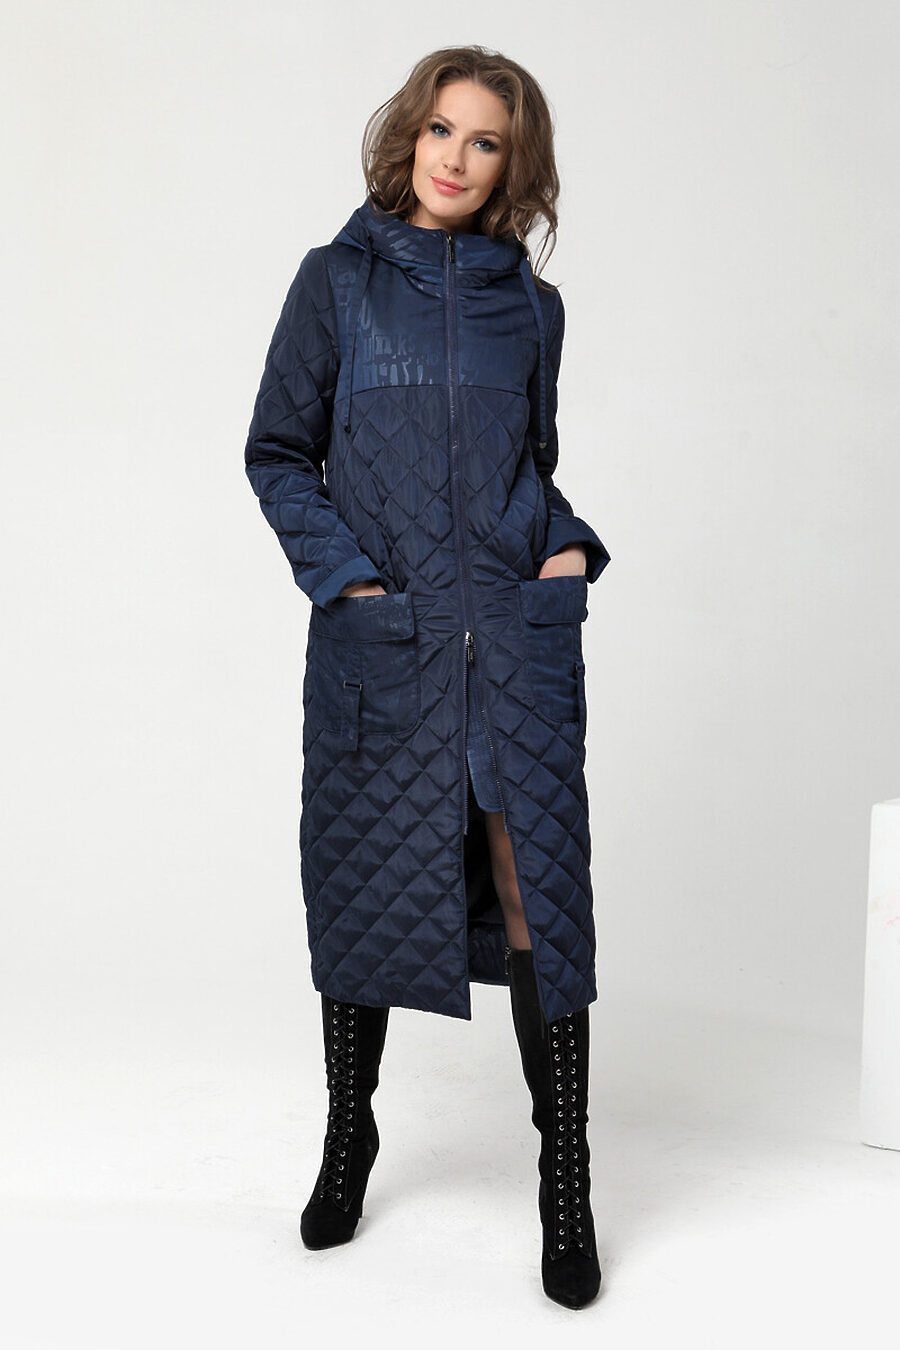 Пальто DIWAY (684811), купить в Moyo.moda